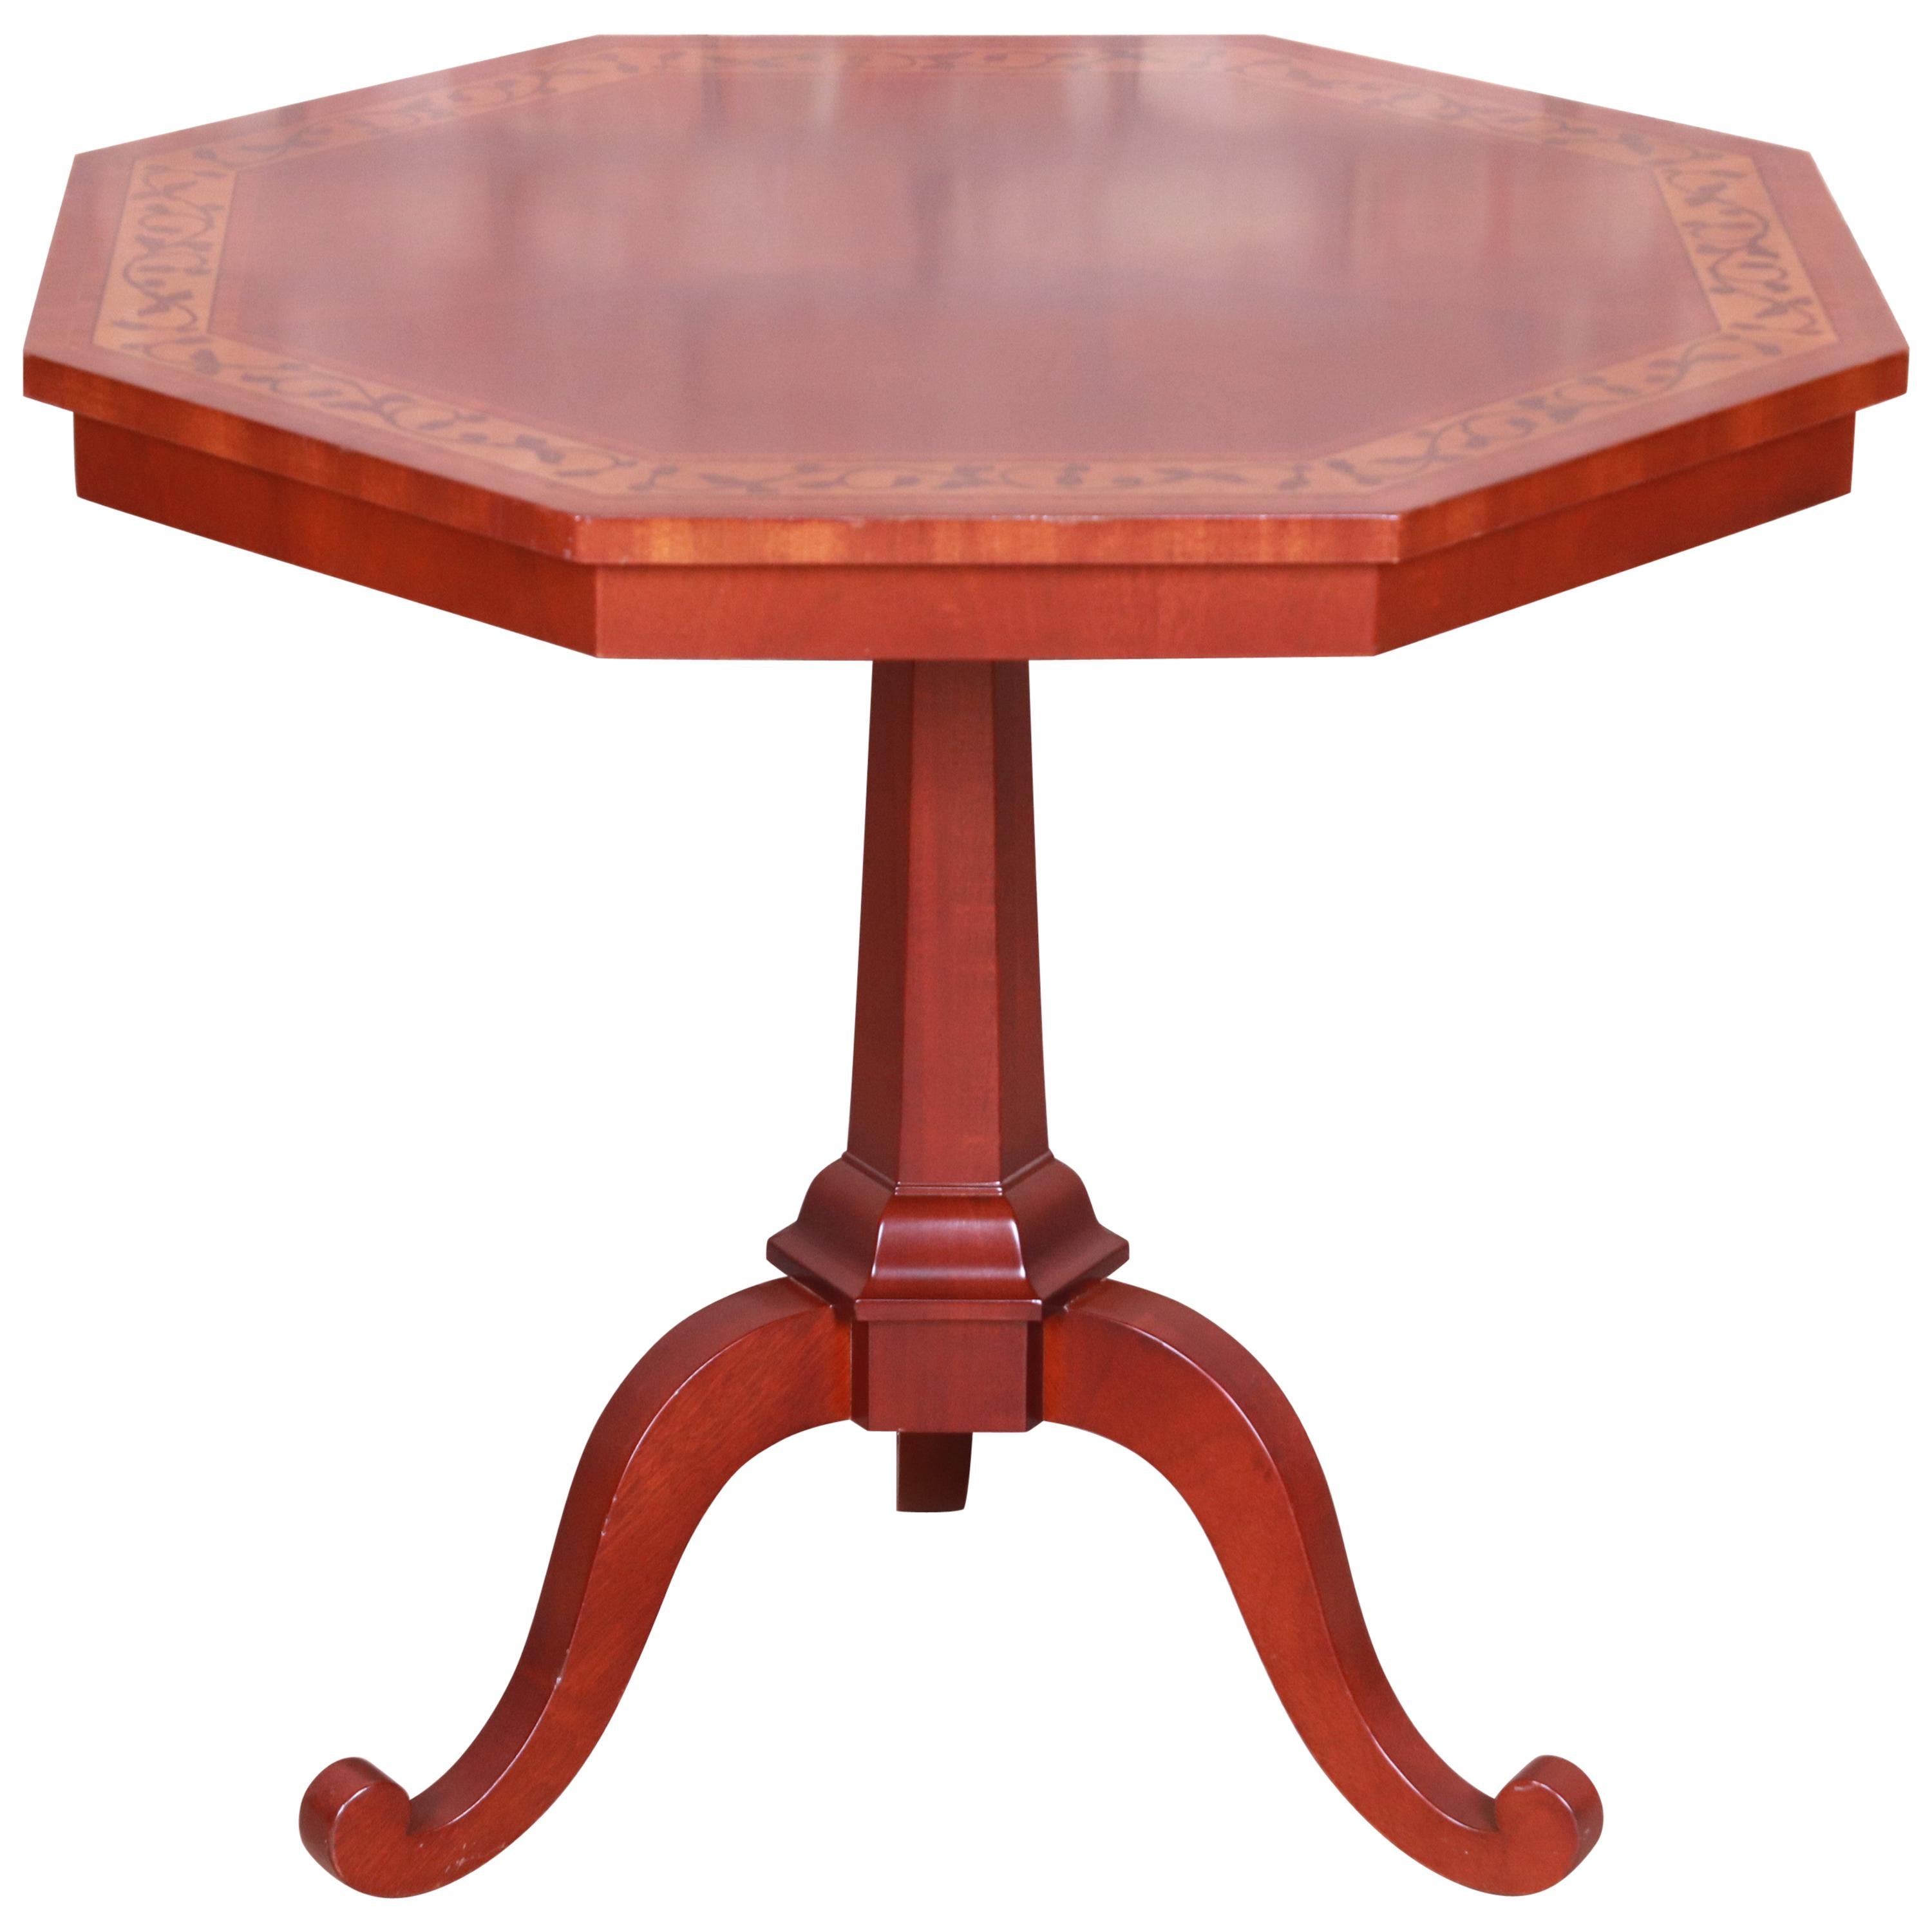 Kindel Furniture Regency Banded Mahogany Pedestal Tea Table